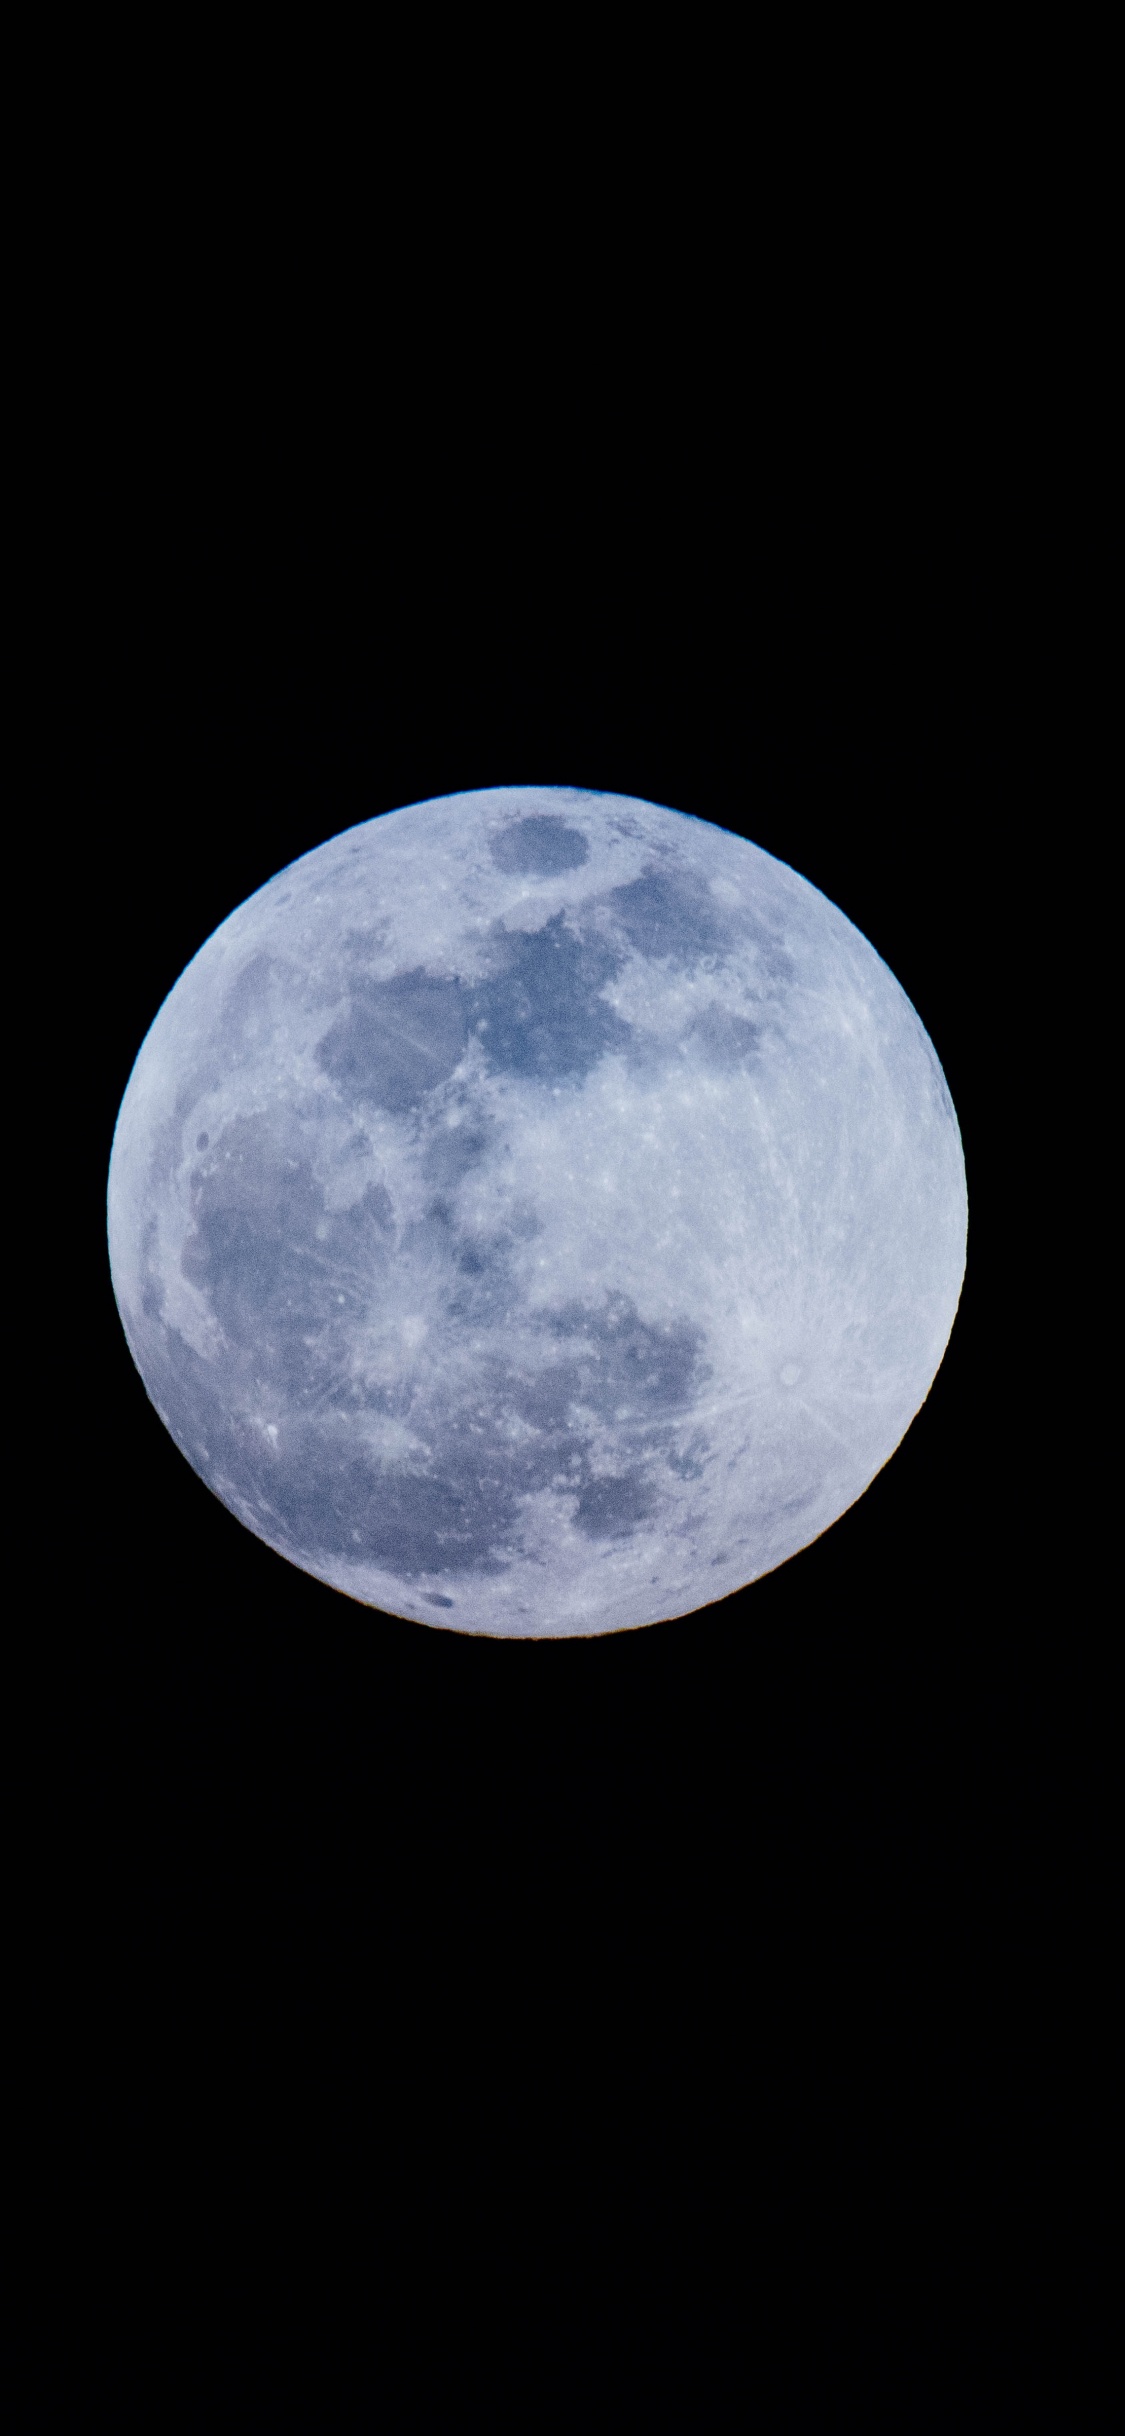 月亮, 满月, 天的事件, 天文学对象, 月光 壁纸 1125x2436 允许